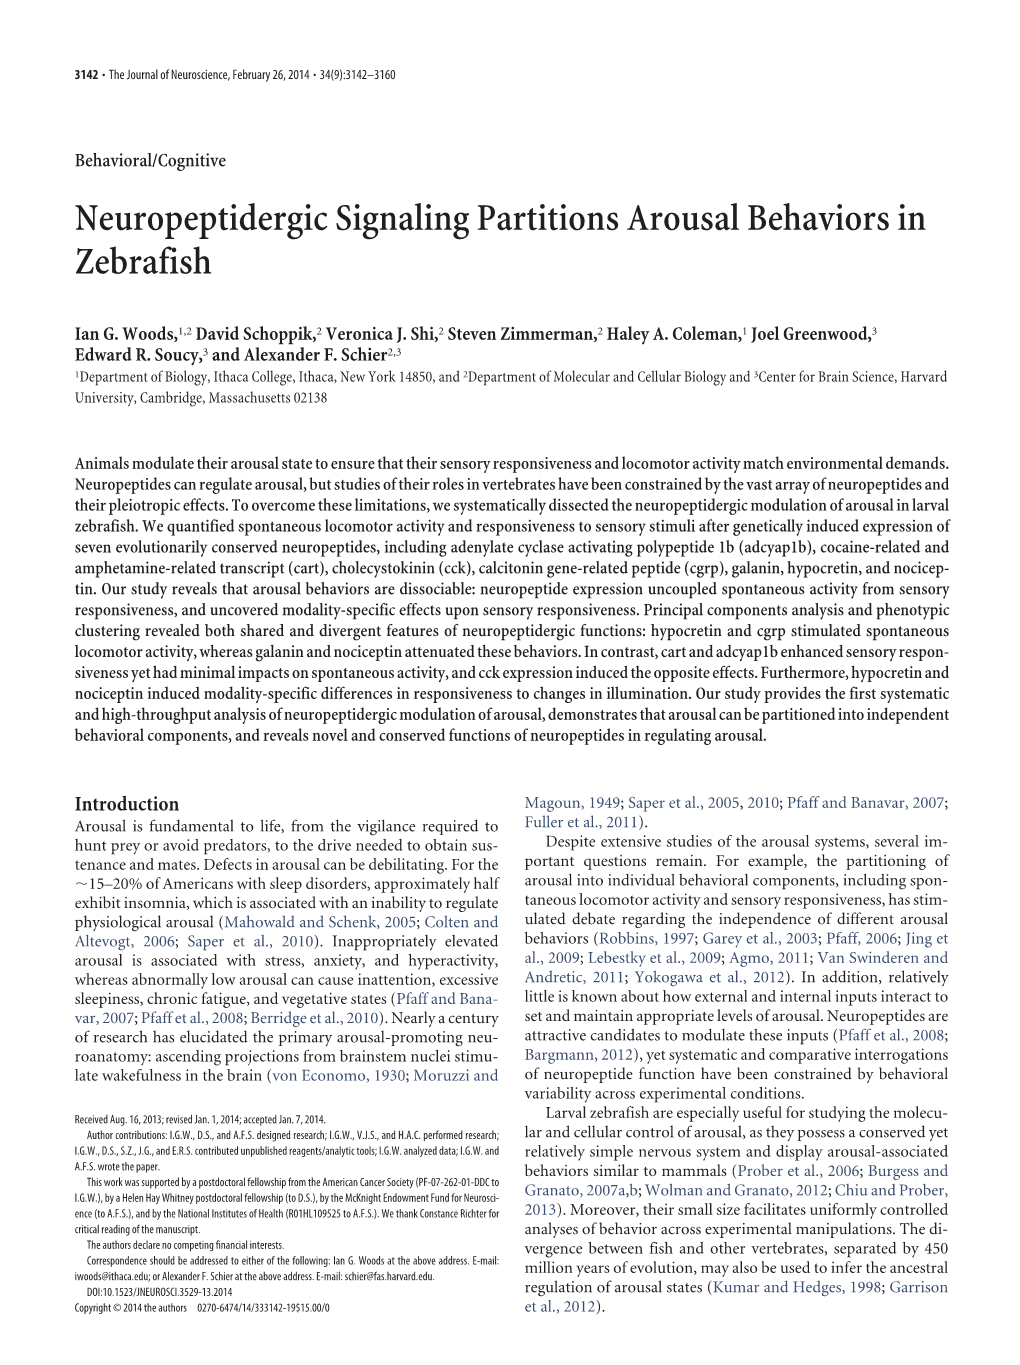 Neuropeptidergic Signaling Partitions Arousal Behaviors in Zebrafish